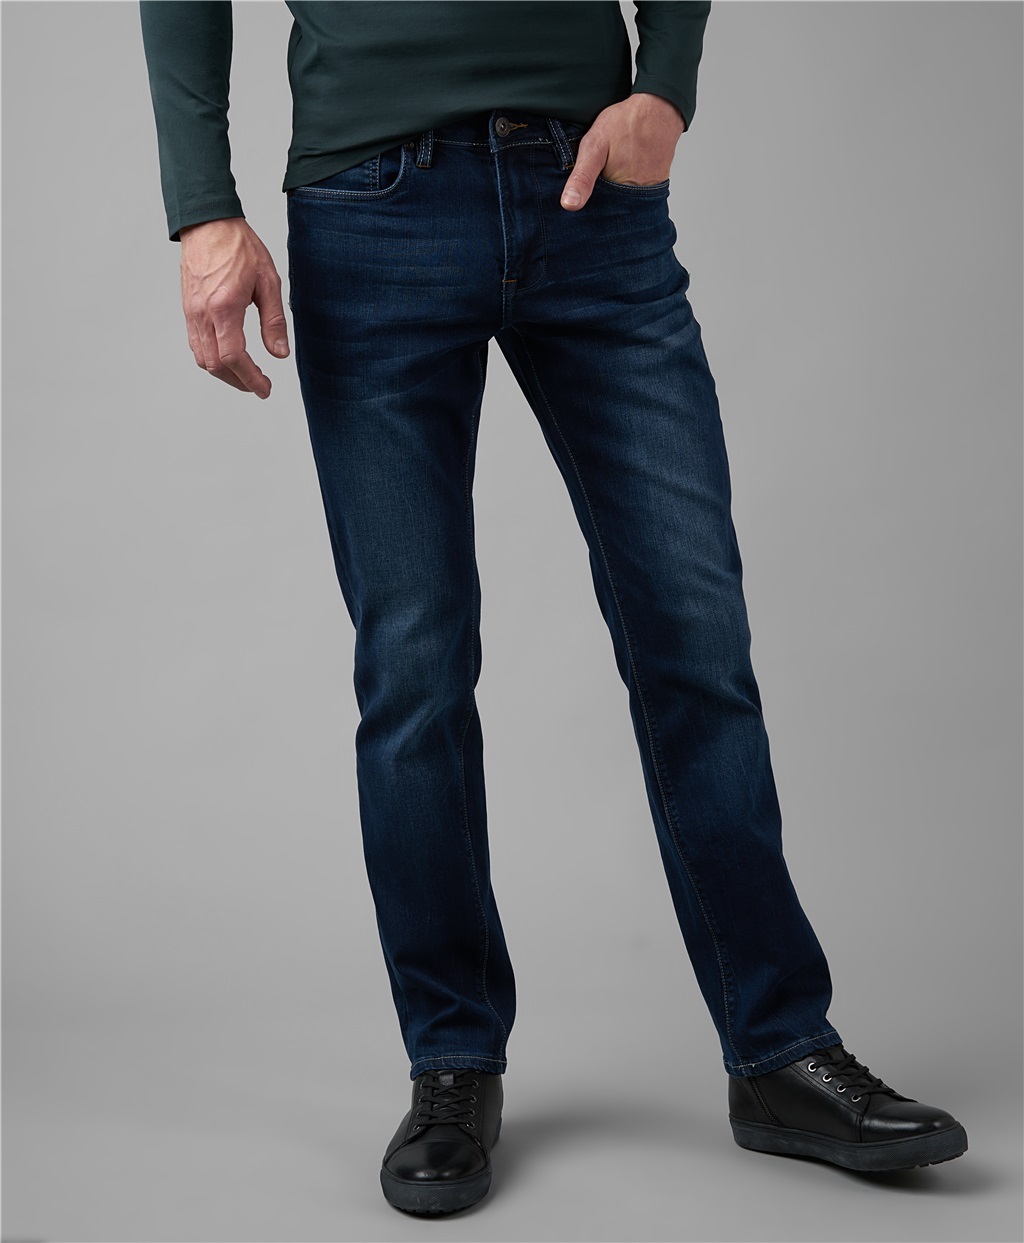 Джинсы мужские классические купить в москве недорого. Джинсы Хендерсон мужские. Джинсы мужские классические. Темно синие джинсы мужские. Тёмно синие джинсы мужские.